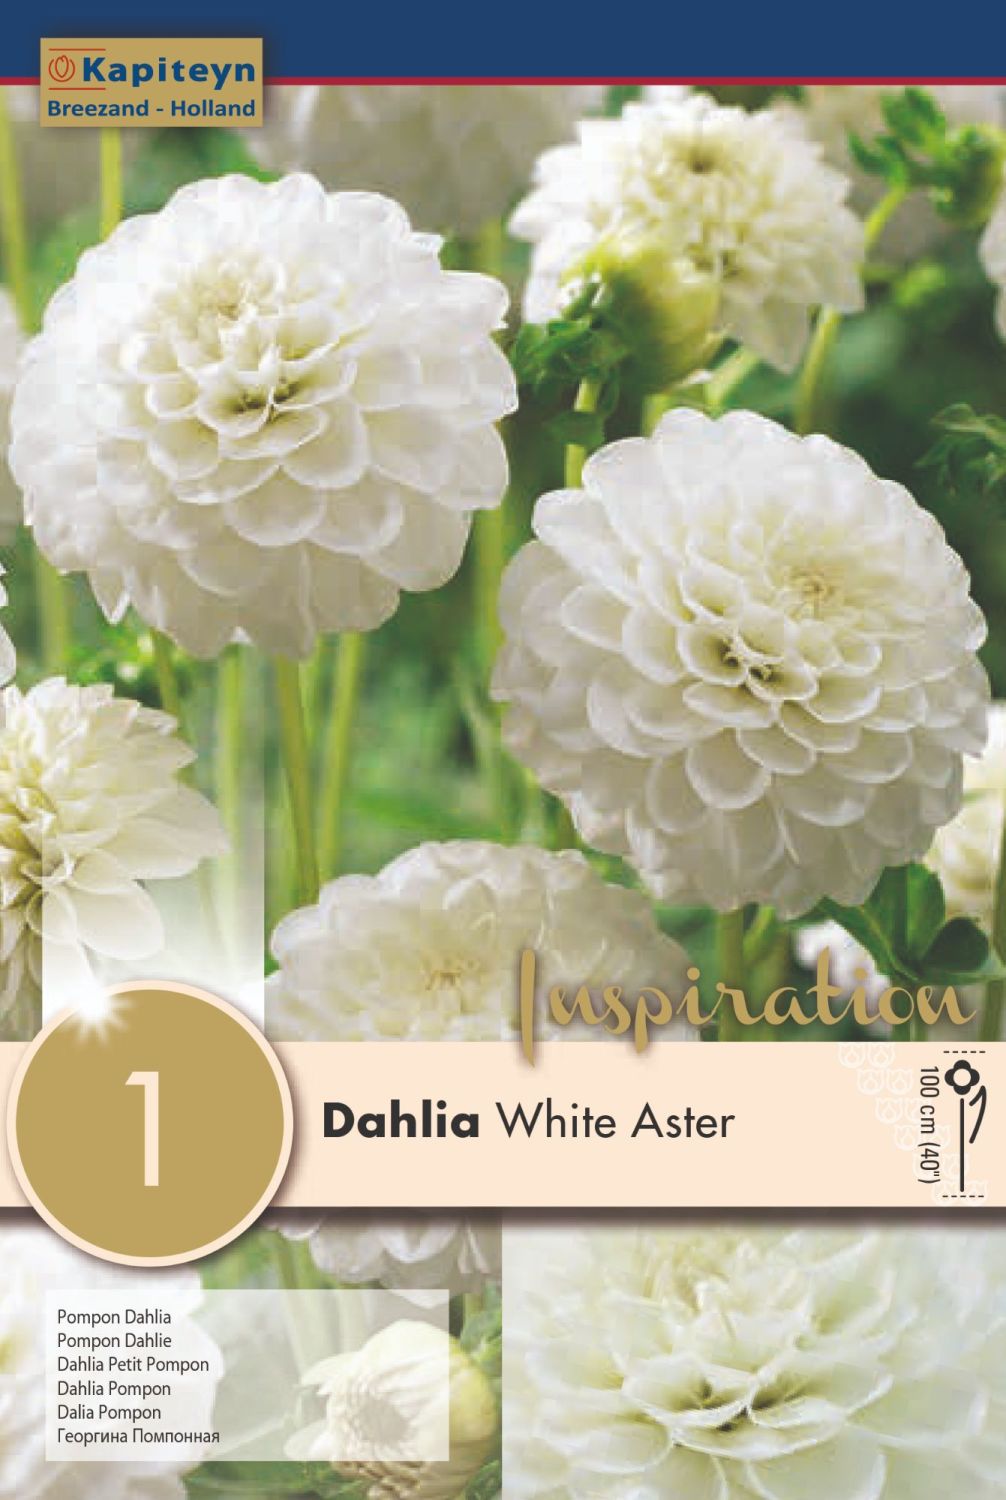 DAHLIA WHITE ASTER